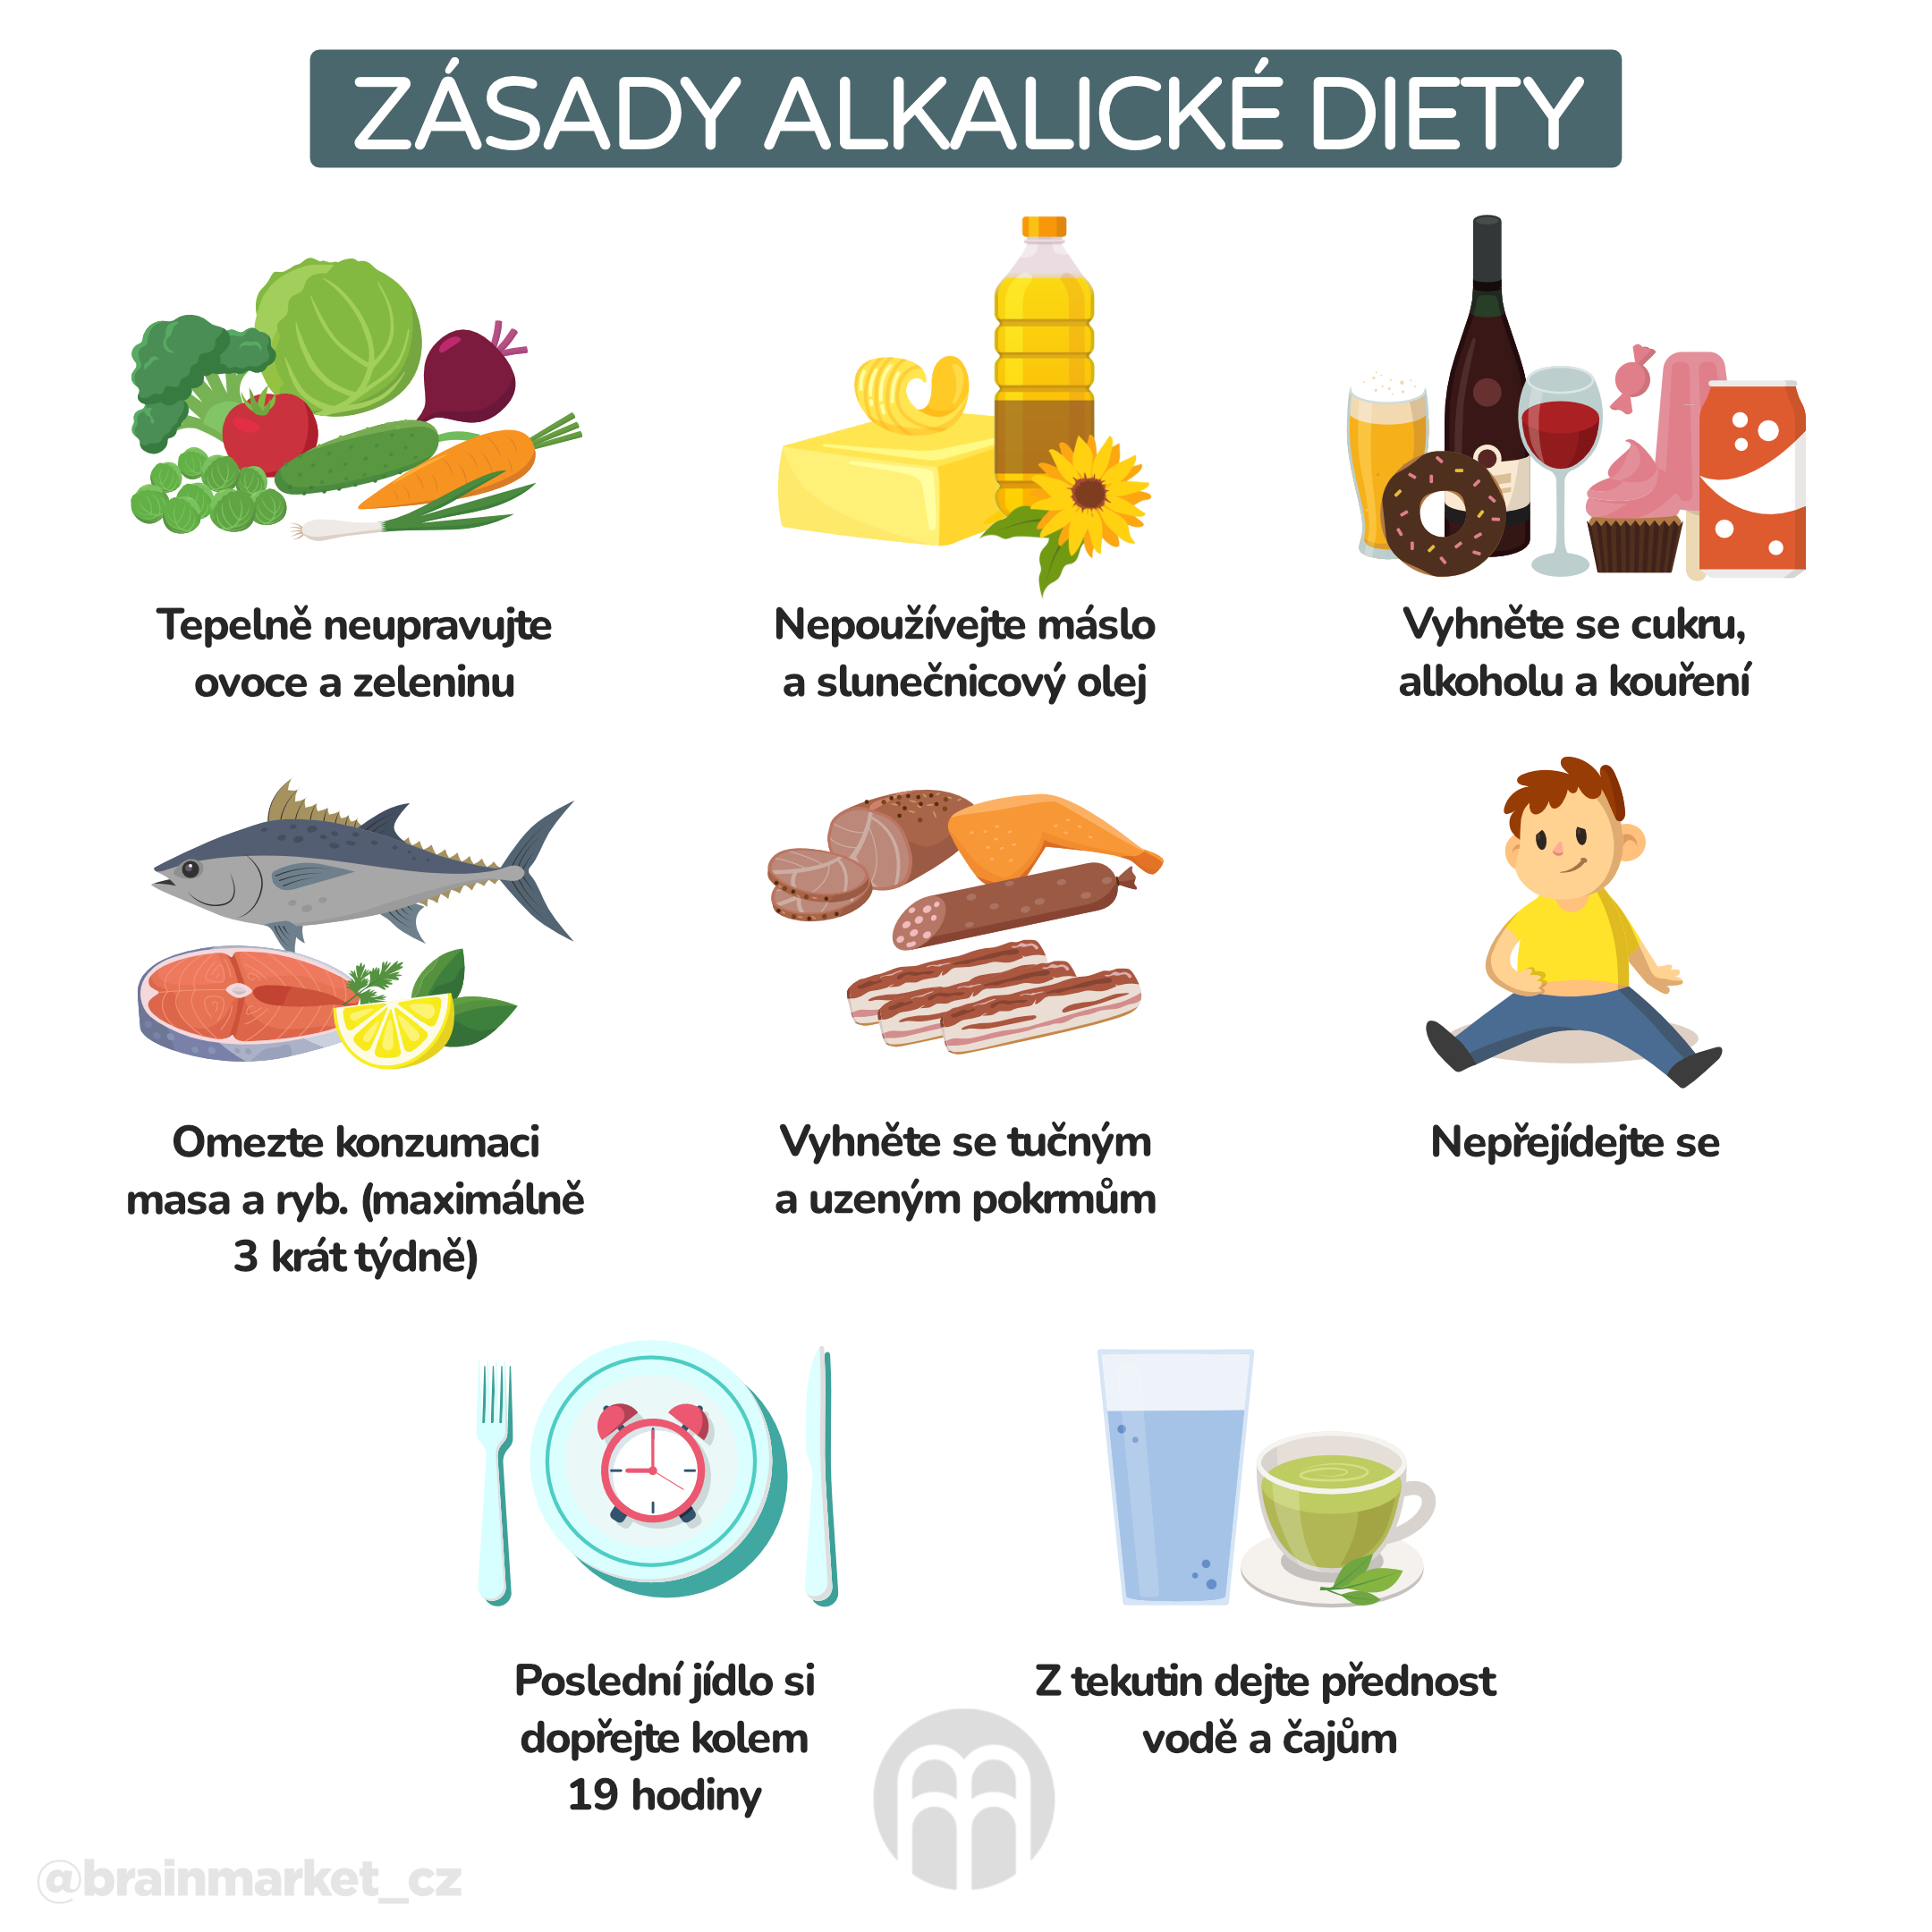 zasady alkalicke diety_infografika_cz